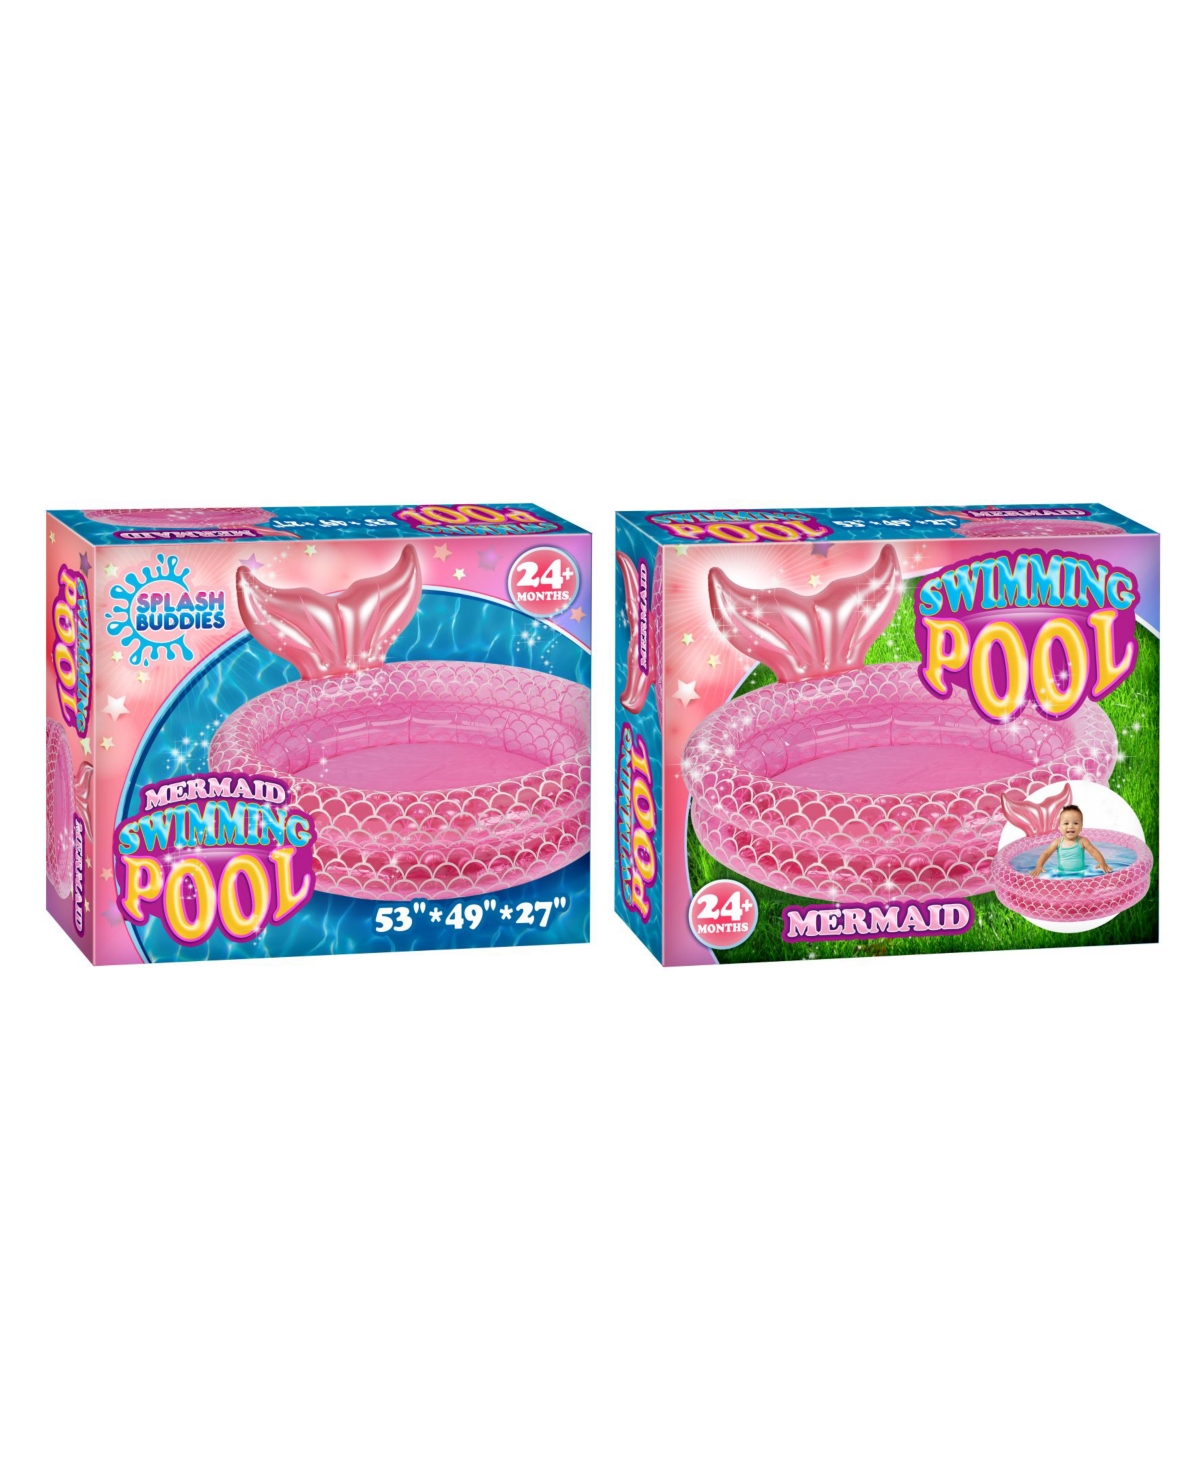 Splash Buddies Mermaid Inflatable 2 Ring Pool In Pink